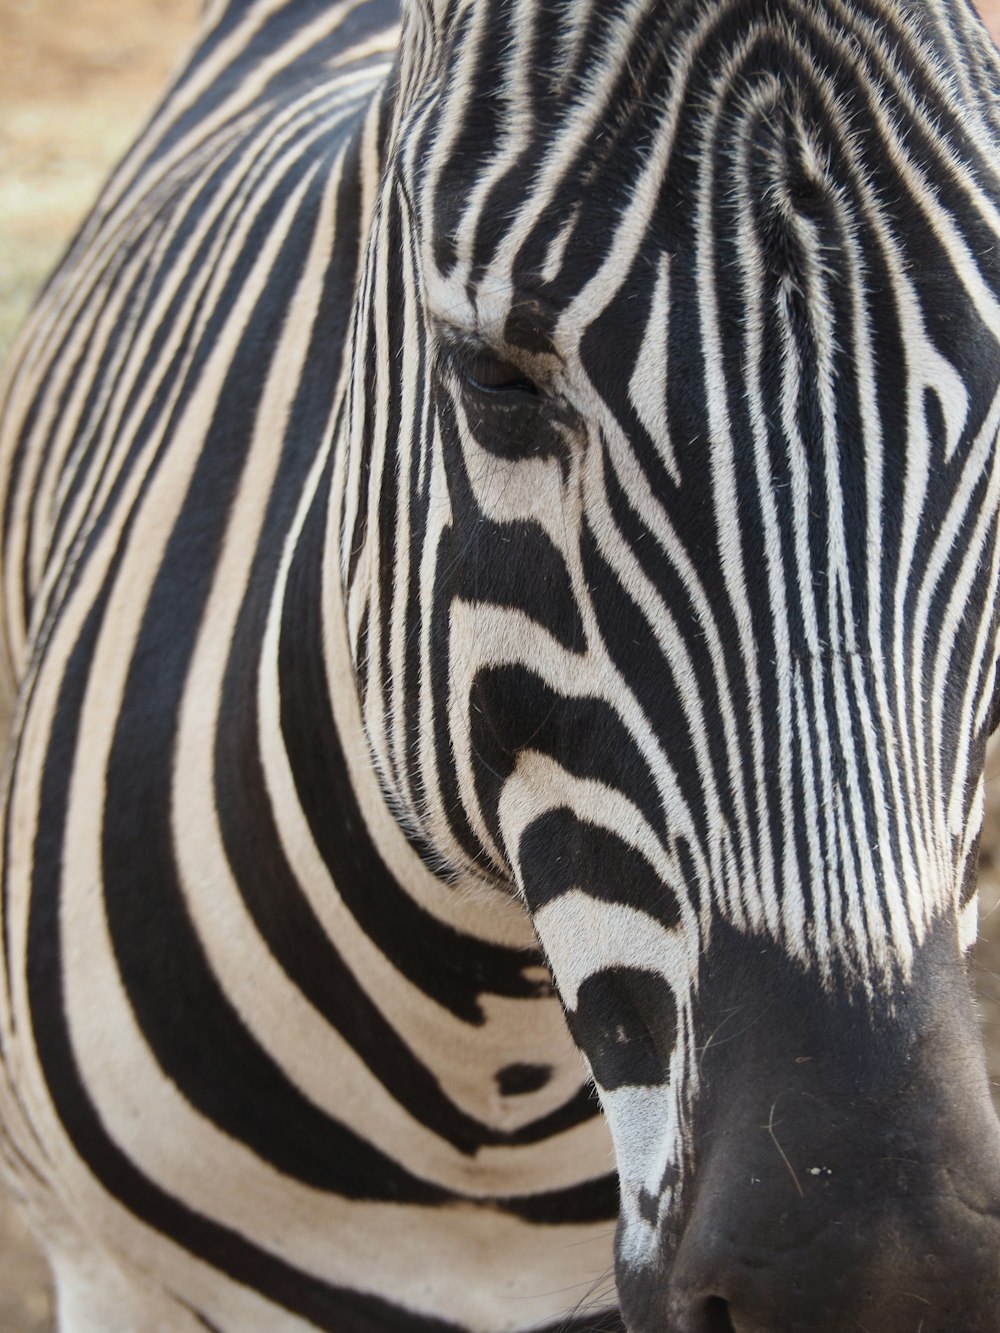 white and black zebra